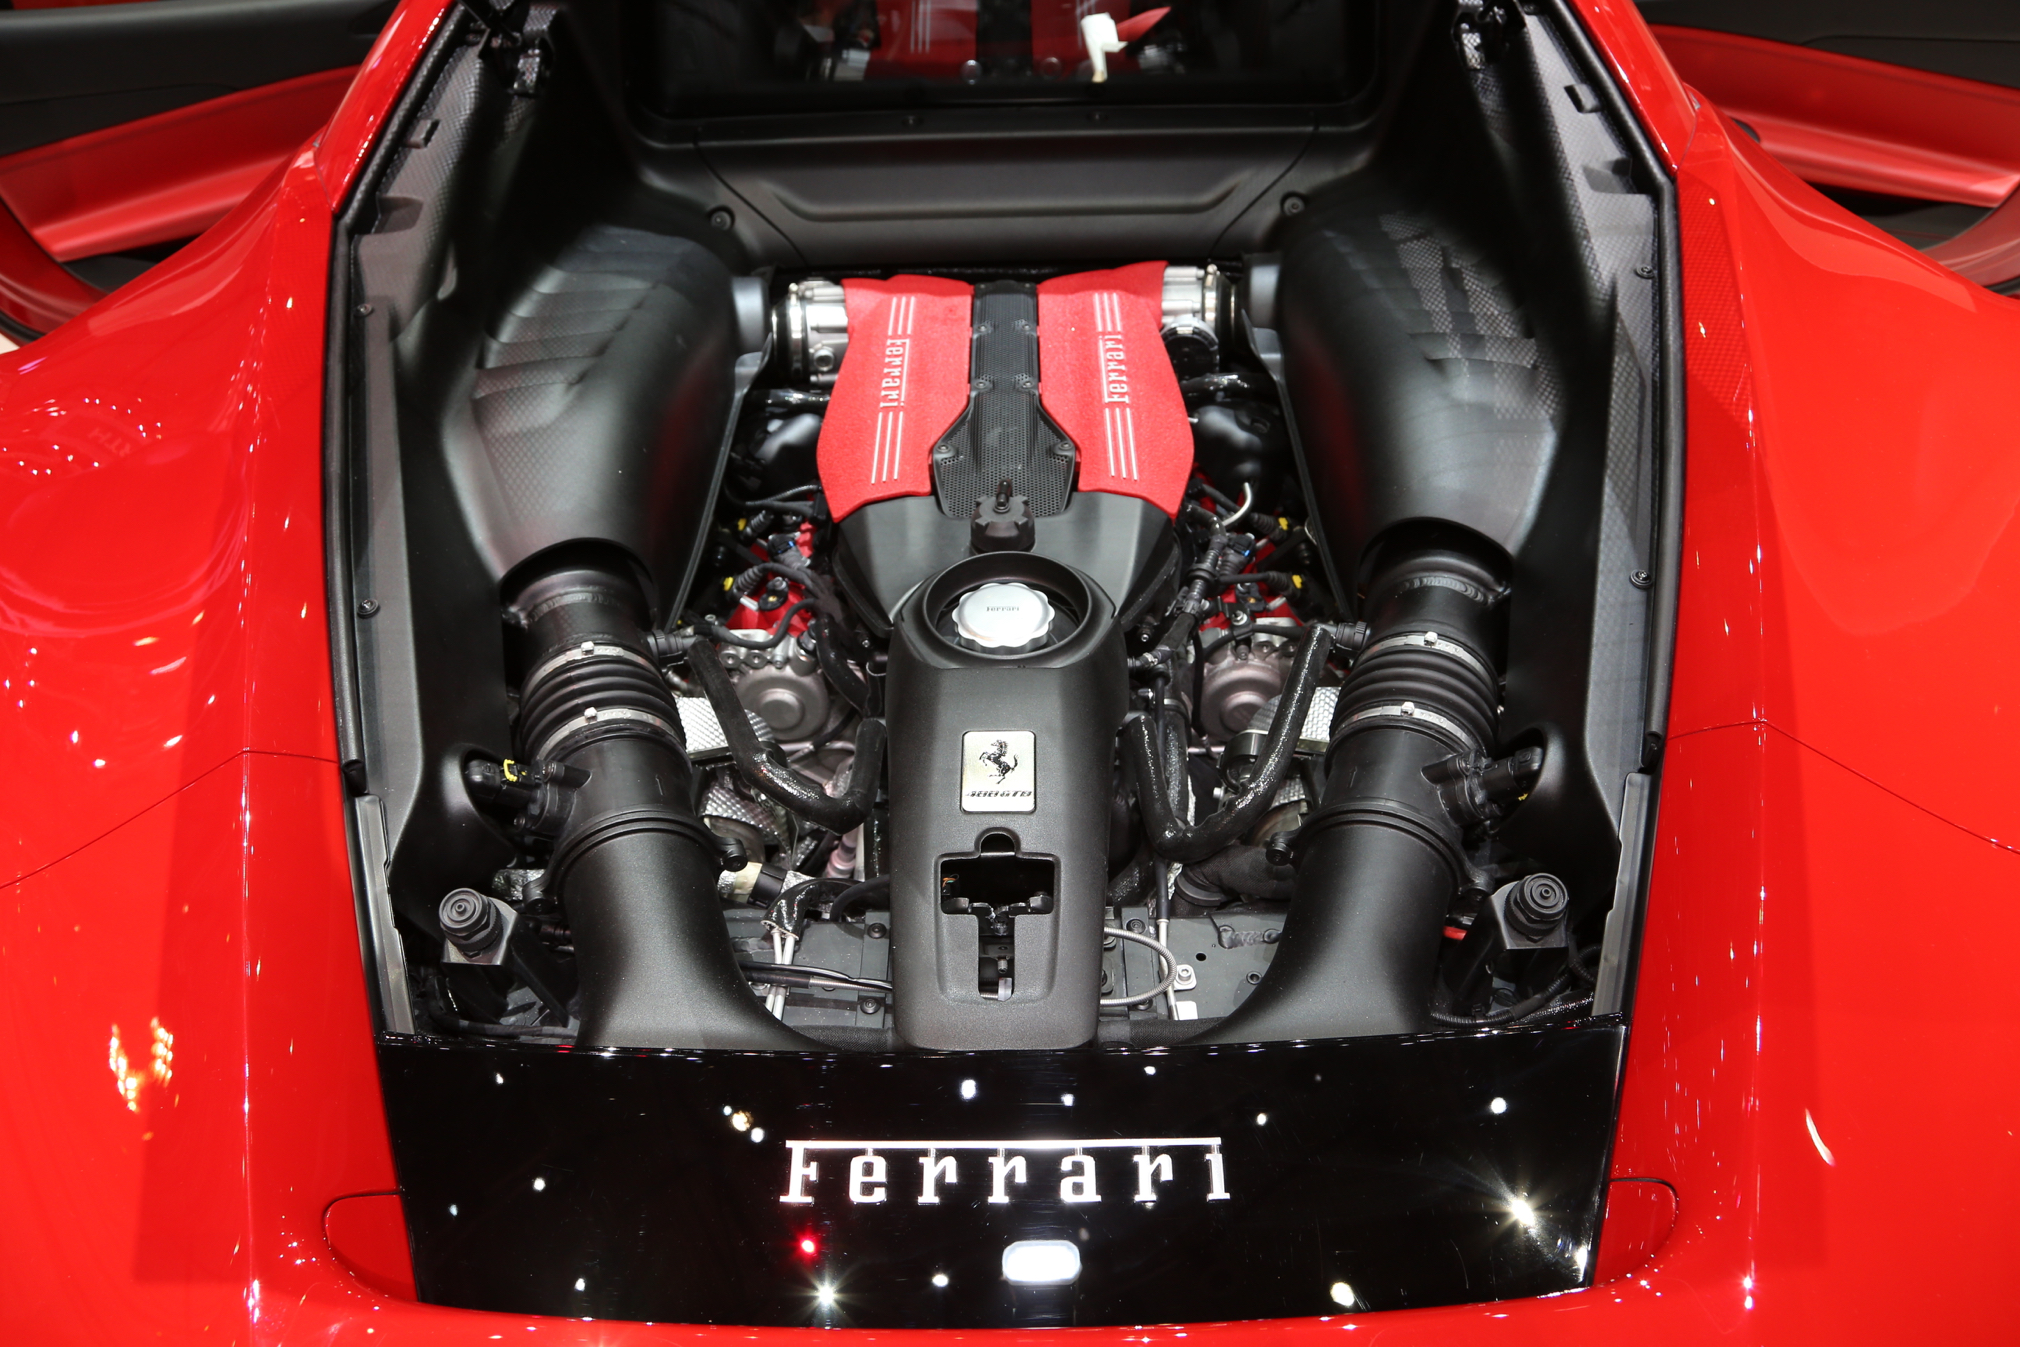 
Động cơ V8 biturbo, dung tích 3,9 lít của Ferrari 488 GTB.
